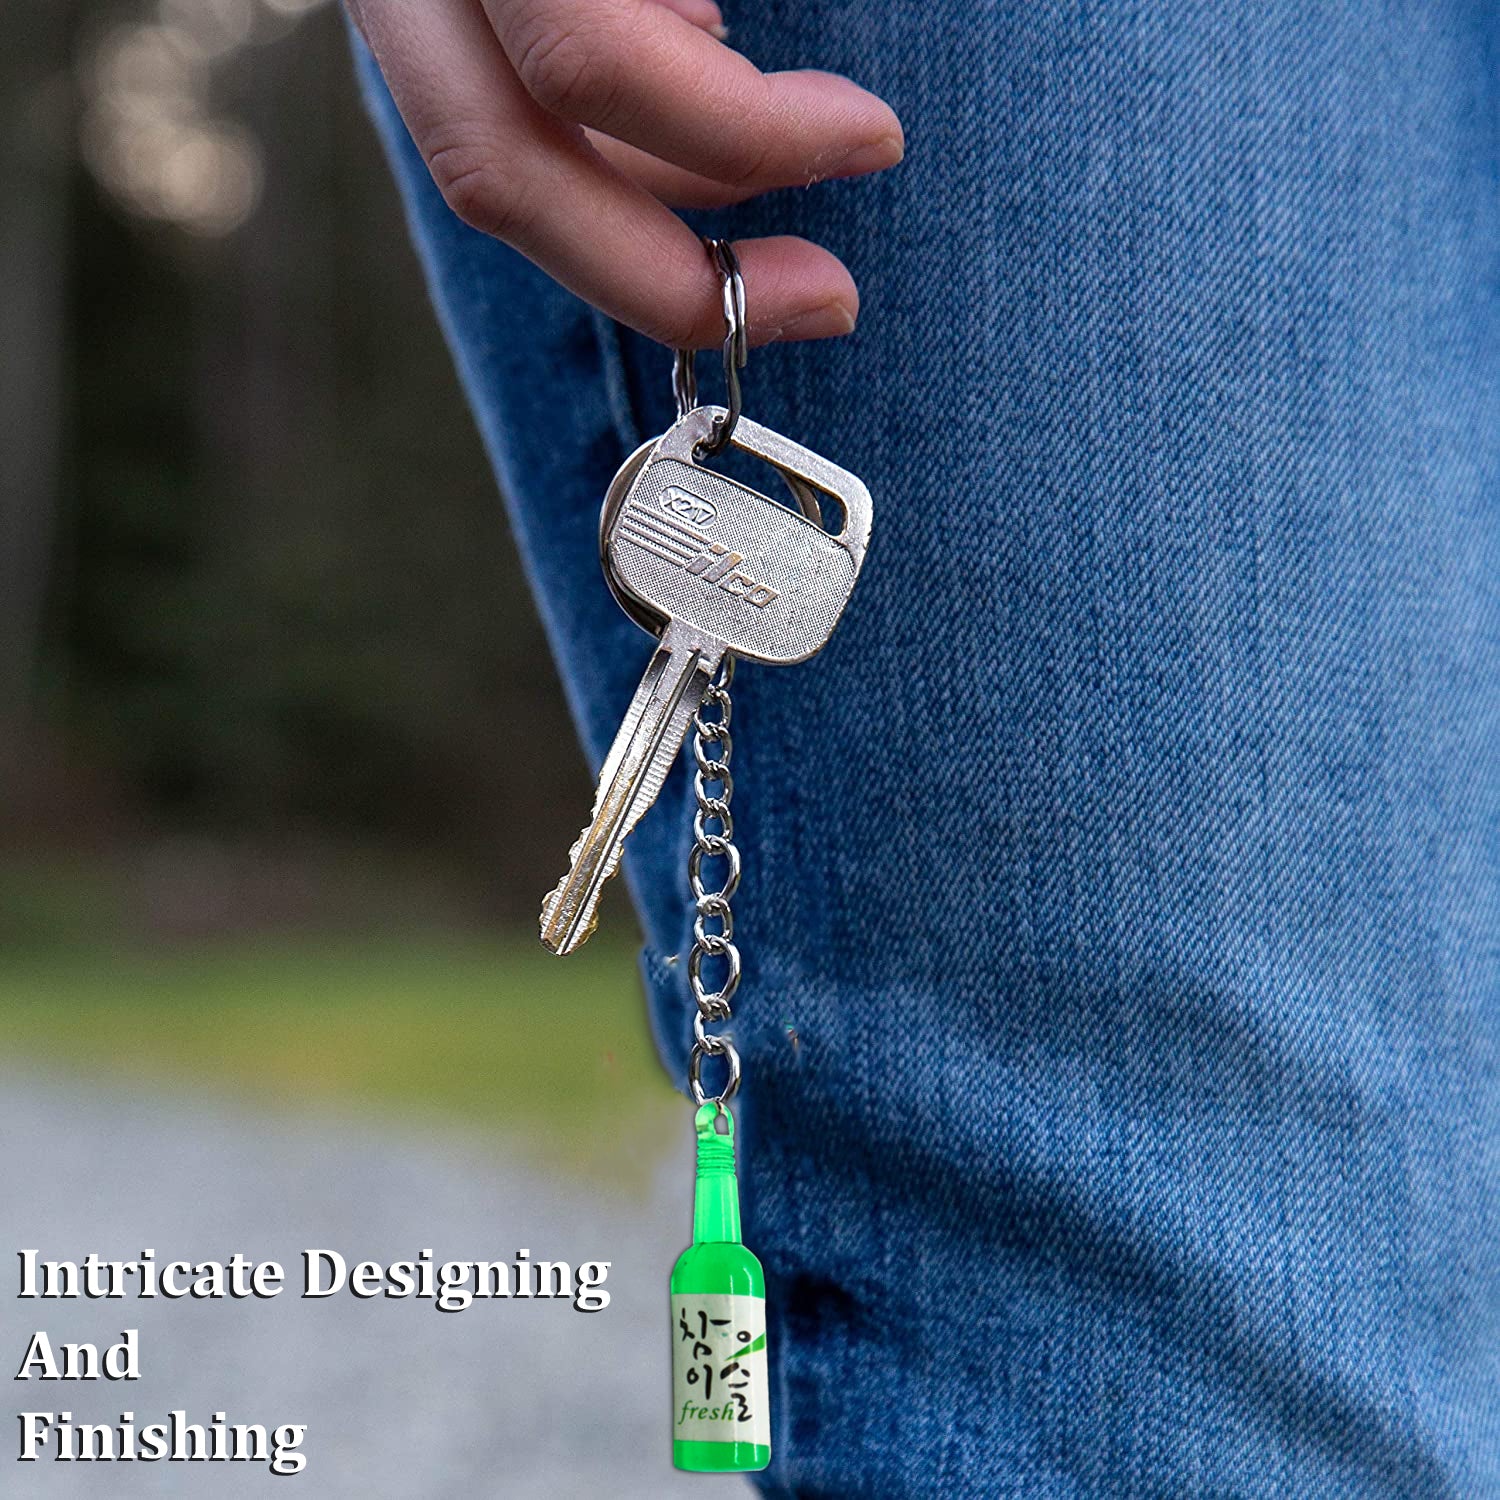 AUTOPOWERZ Cute Bottle Keychain (Green Bottle Keyring)